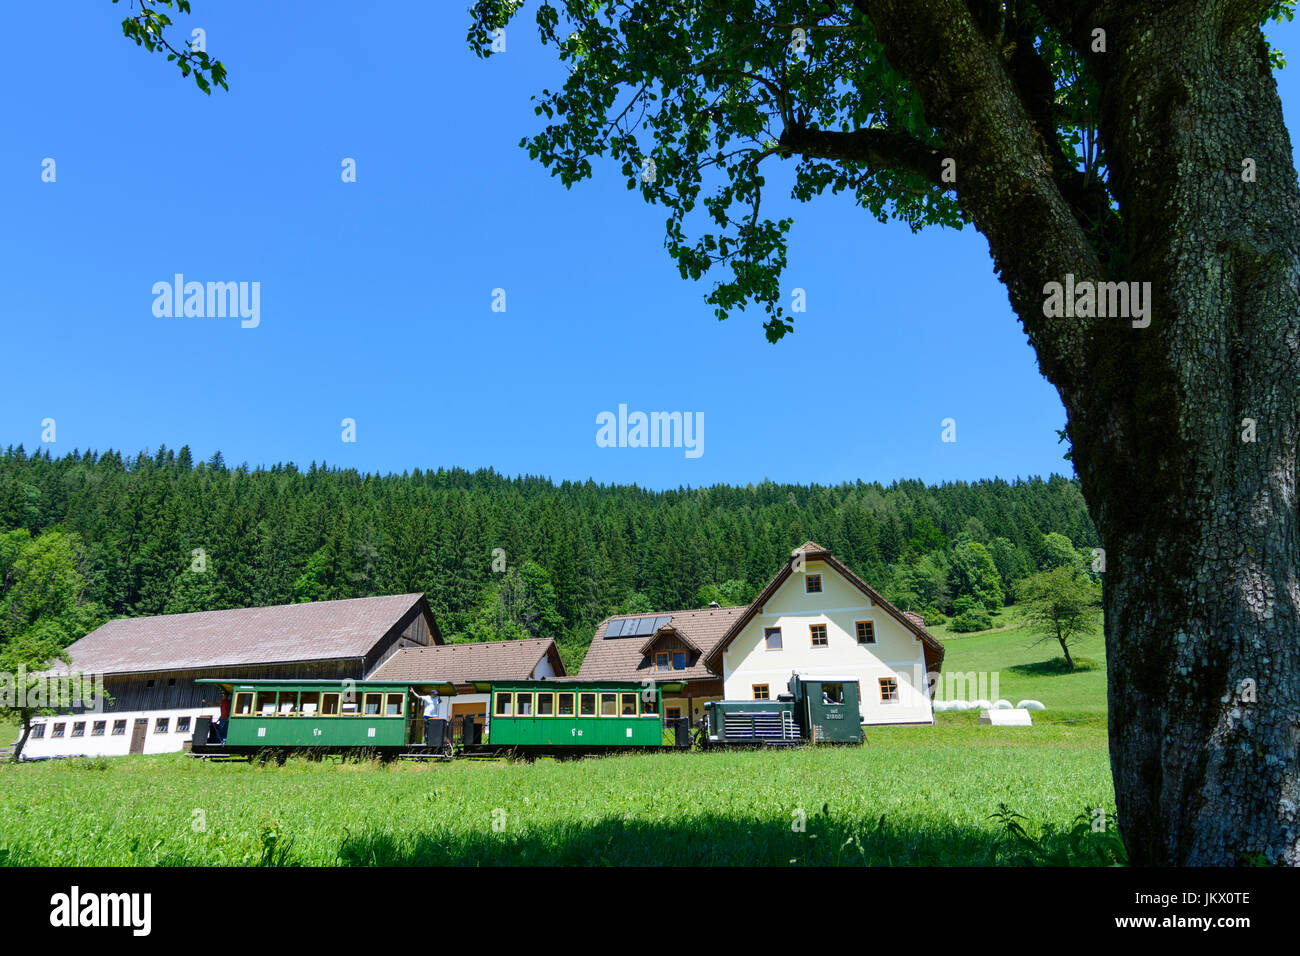 train of Ybbstalbahn (Ybbsthalbahn, Ybbs Valley Railway) in Pfaffenschlag, Lunz am See, Mostviertel, Niederösterreich, Lower Austria, Austria Stock Photo